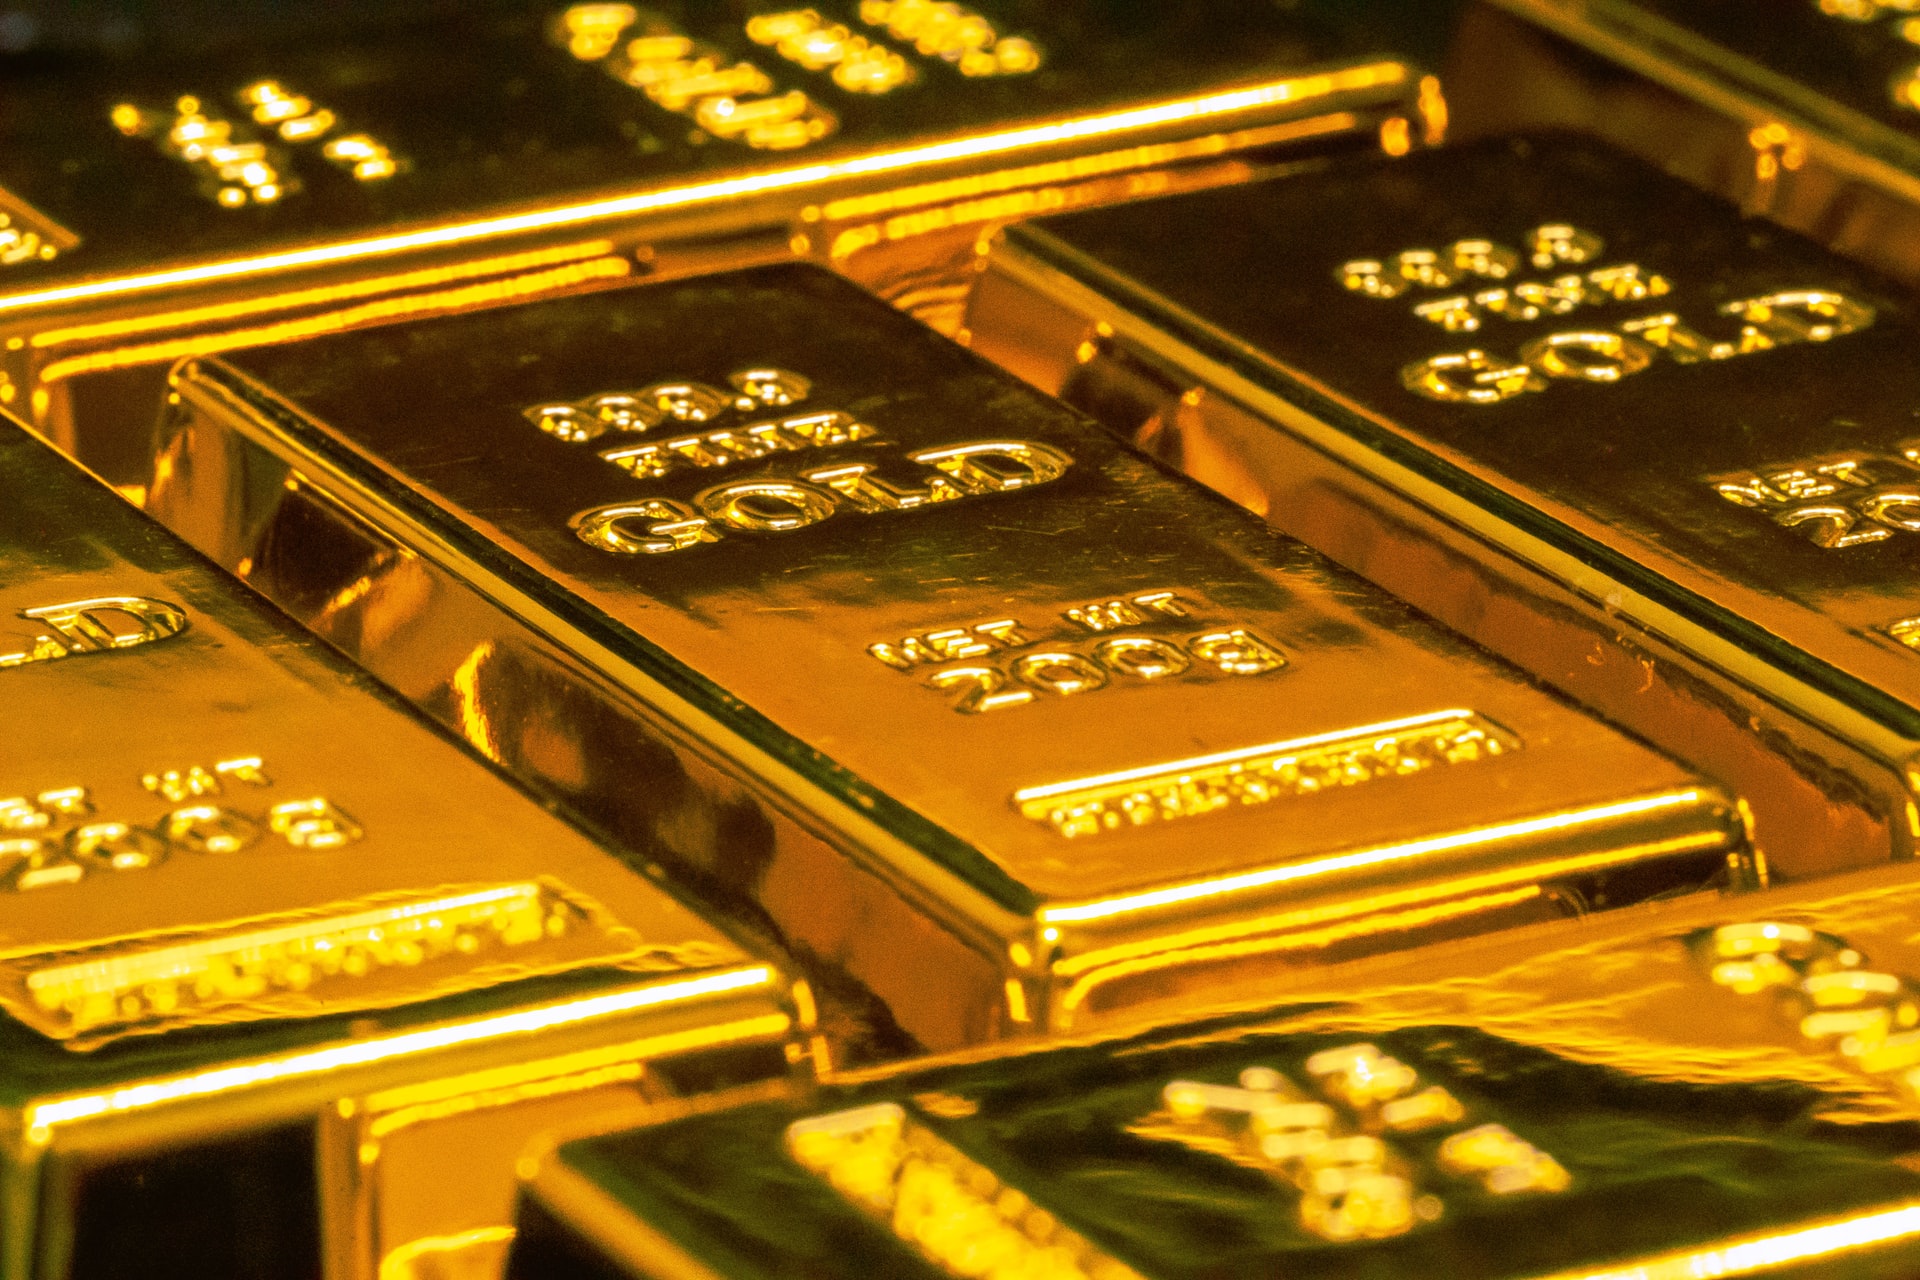 Trots den nuvarande inflationen har guldmarknaden inte rört sig och förblir stabil under året. Tänk om inflationen inte var den viktigaste ekonomiska faktorn för att få guldpriset att röra på sig i perioder av inflation?